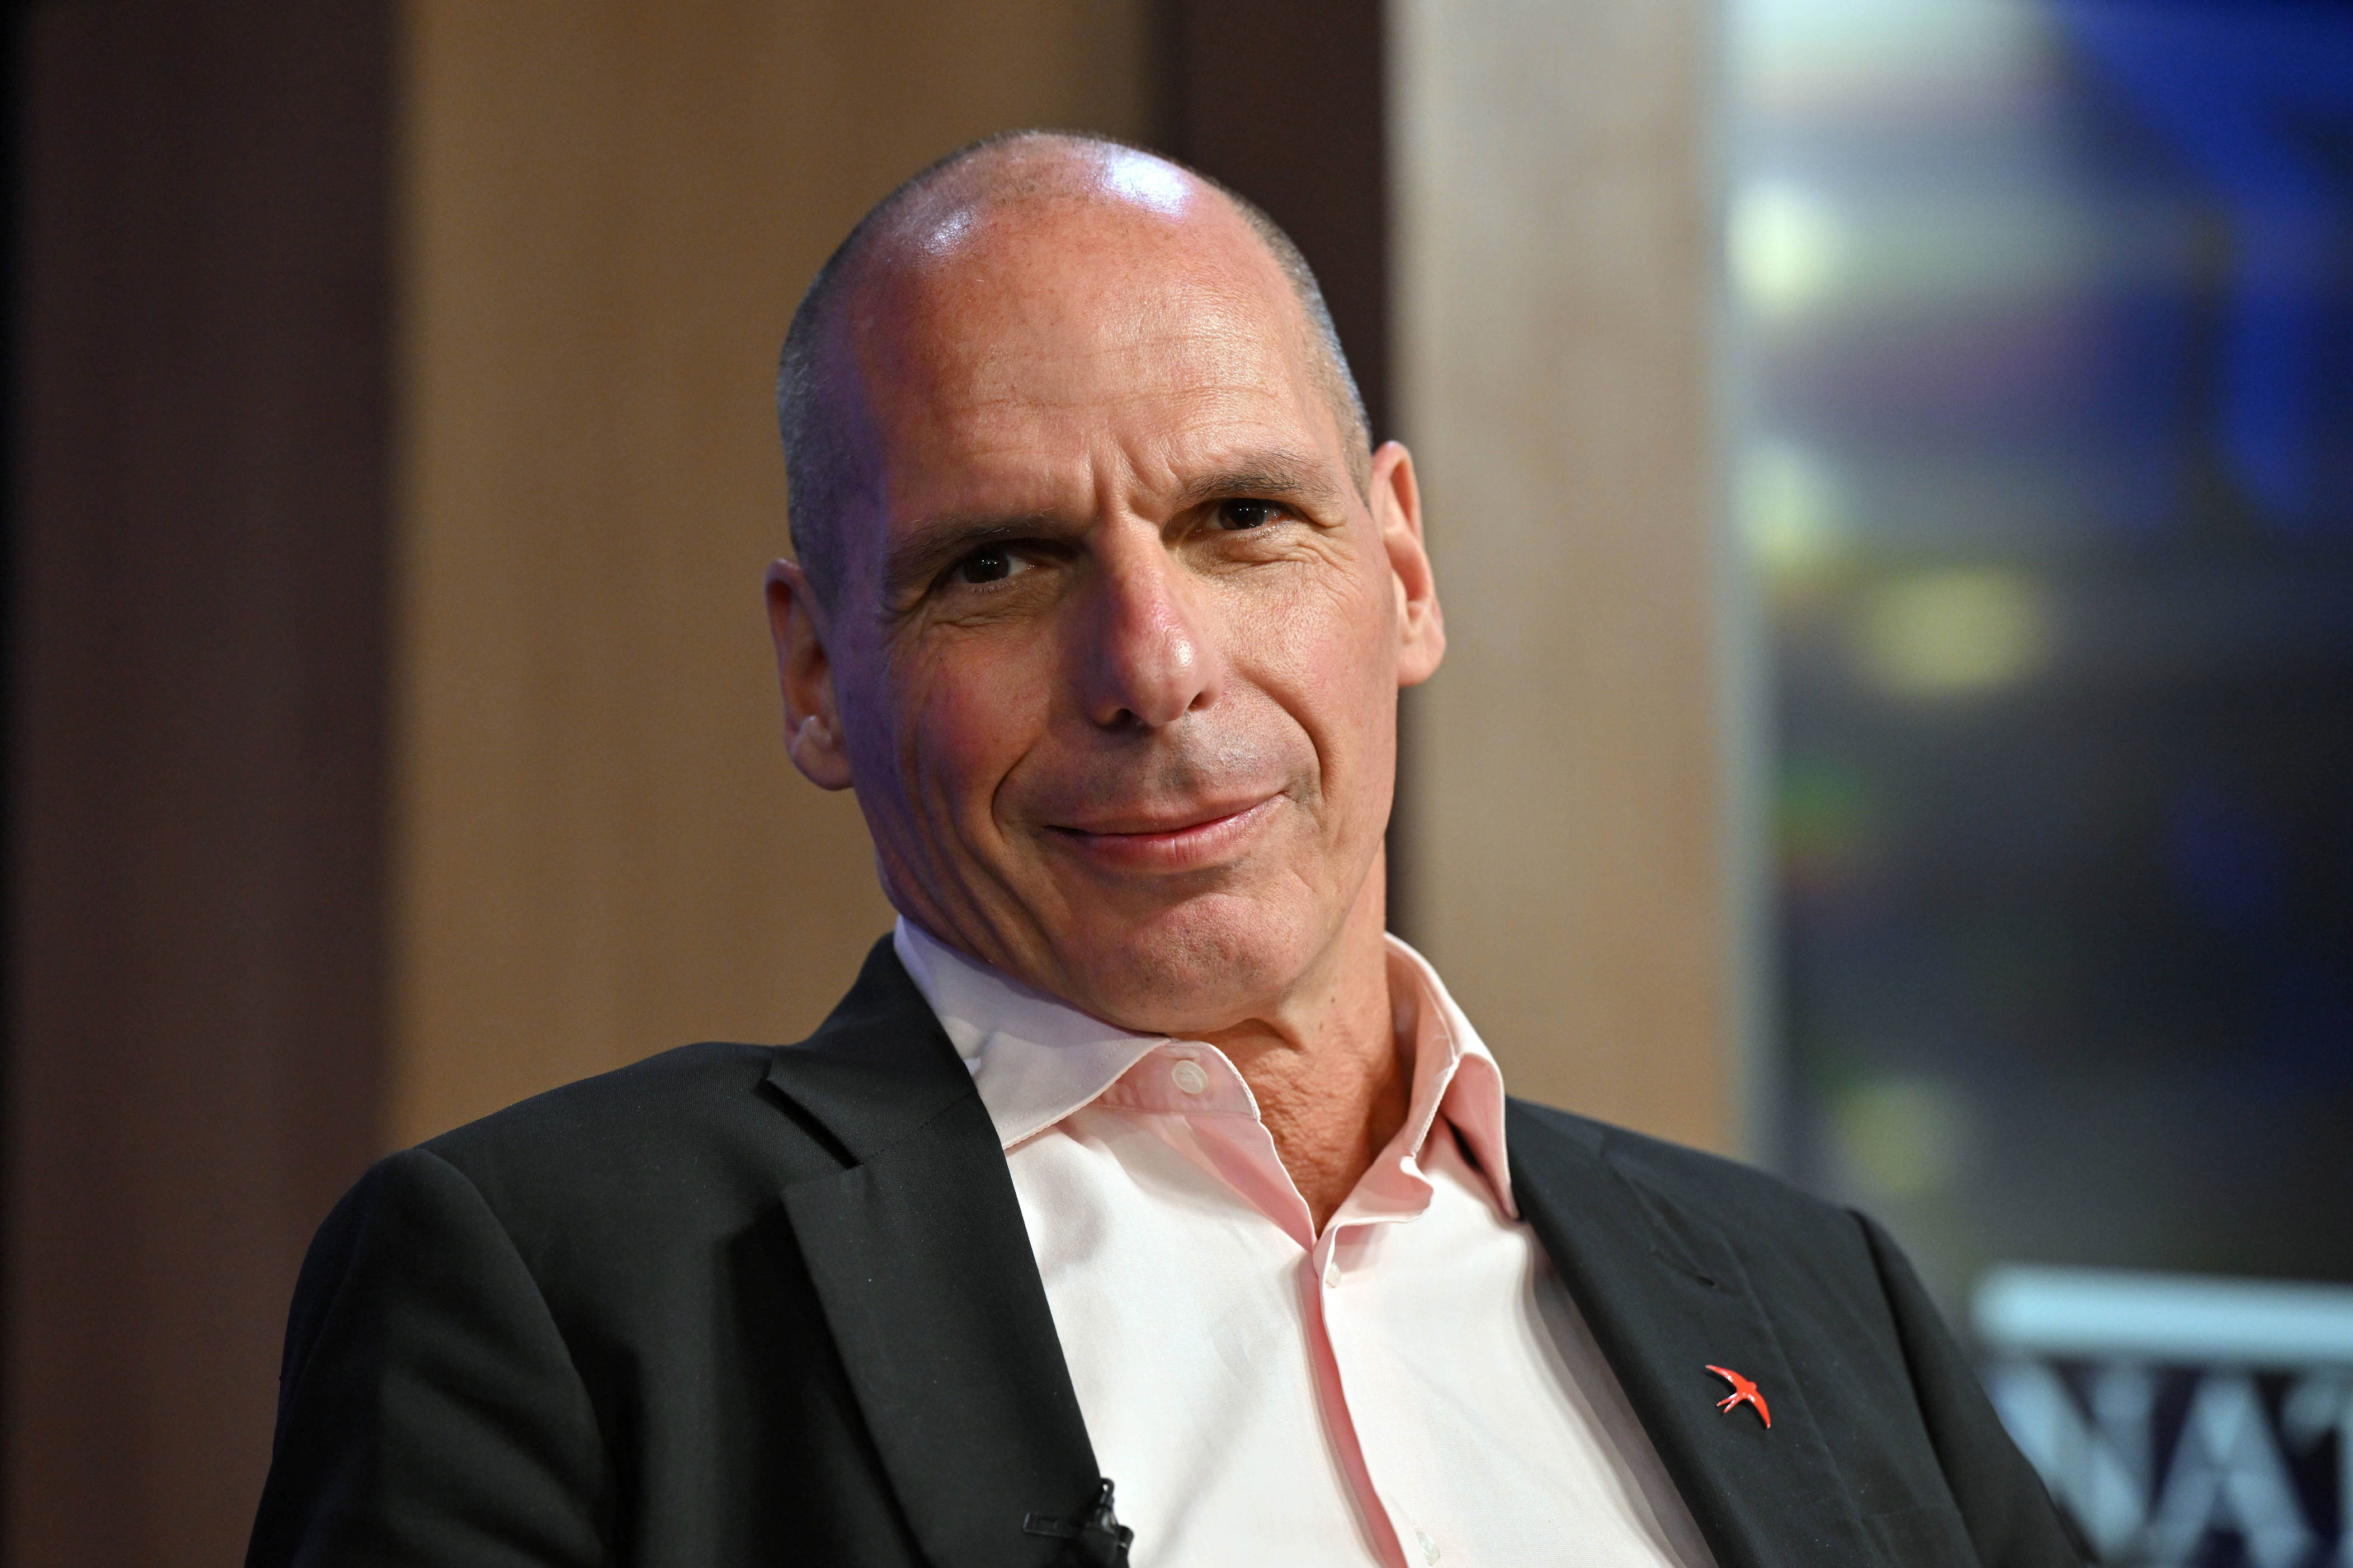 griechenlands ex-finanzminister janis varoufakis erhält in deutschland einreiseverbot